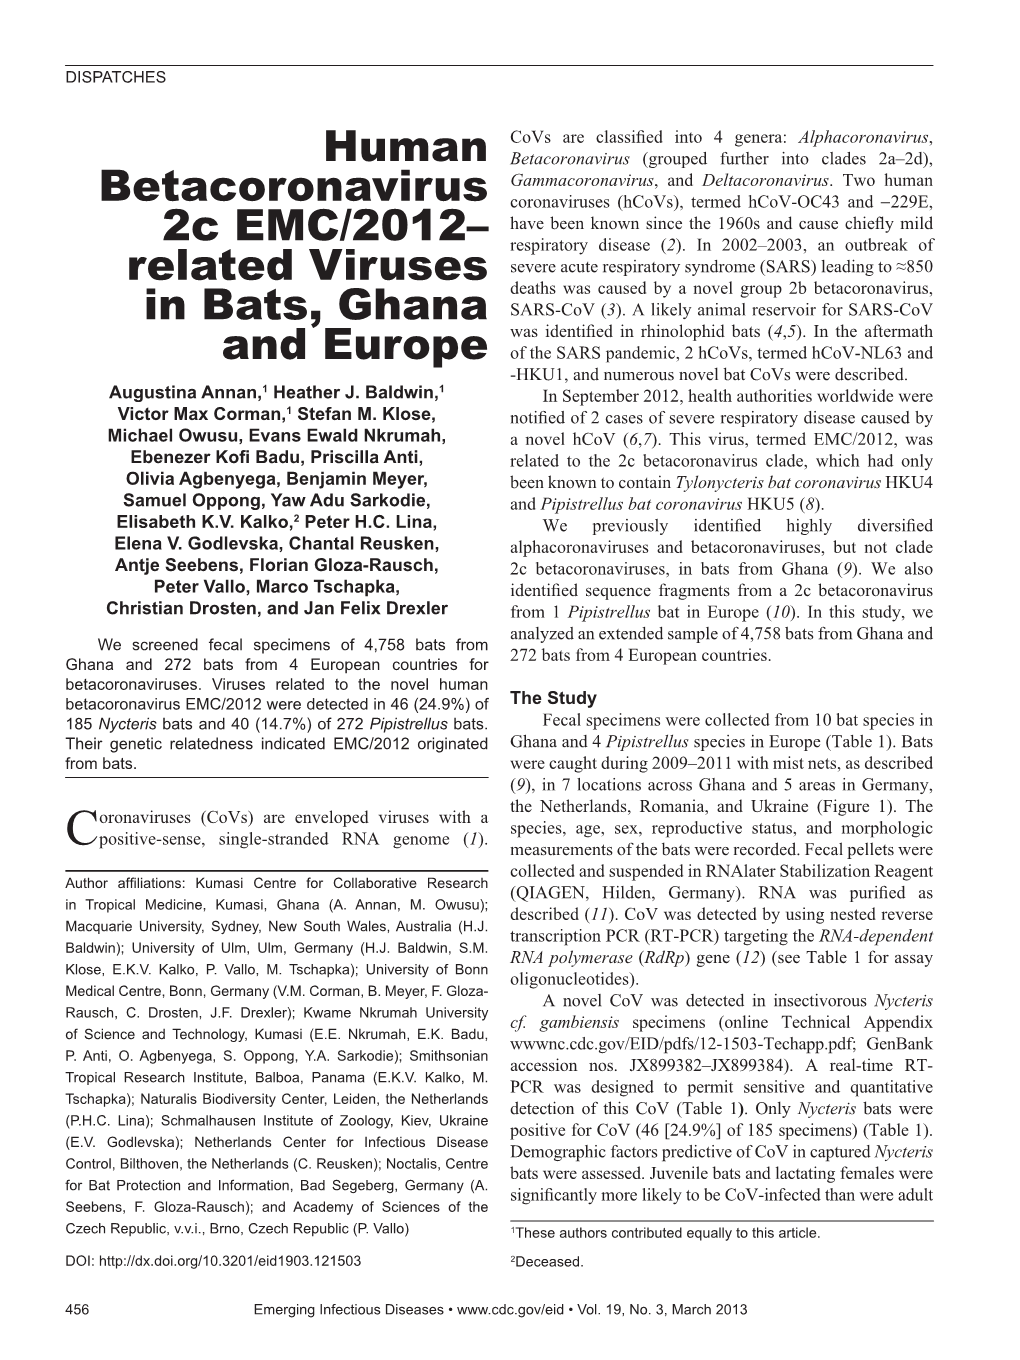 Human Betacoronavirus 2C EMC/2012–Related Viruses in Bats, Ghana and Europe